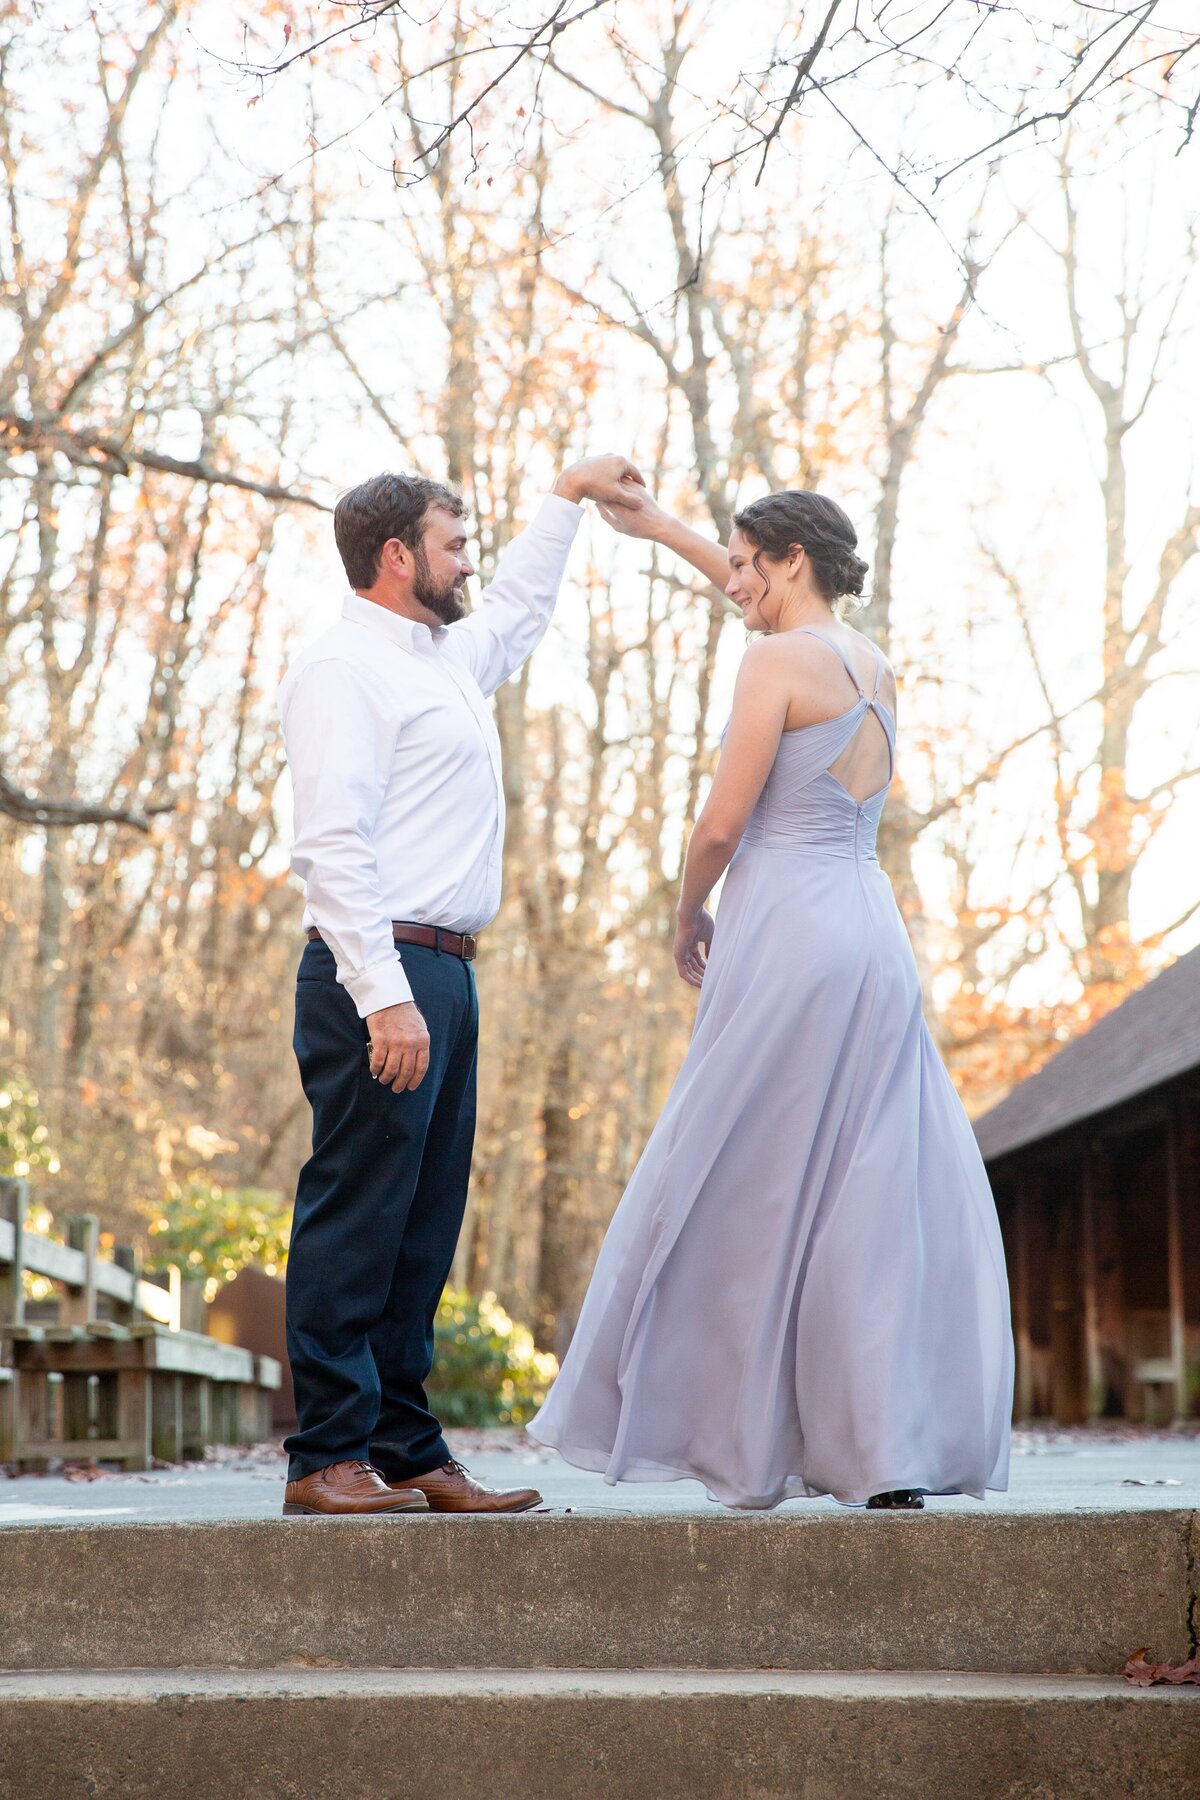 couple-dancing-lavendar-dress